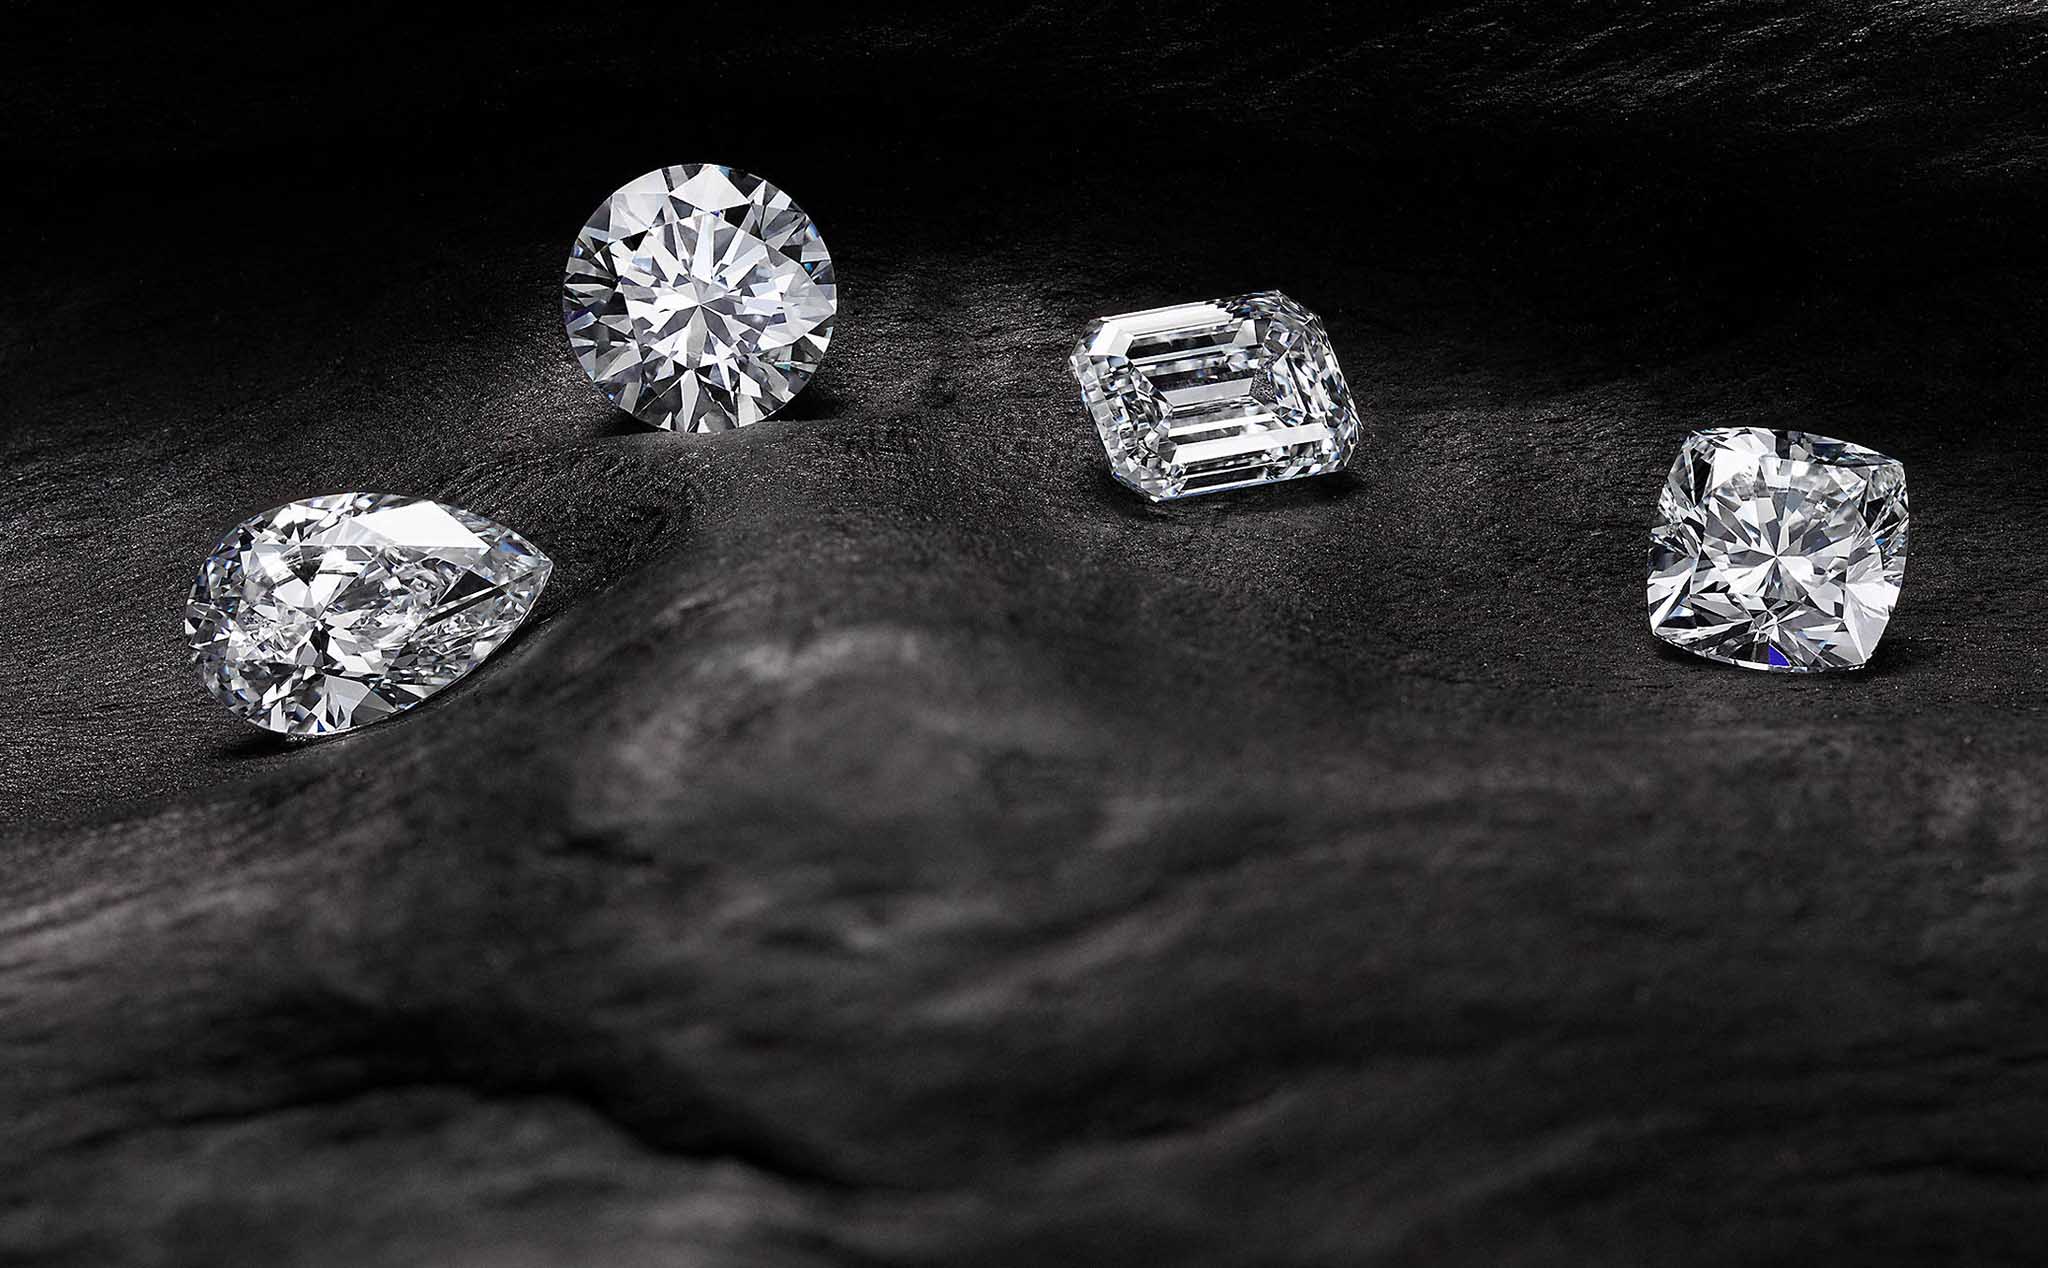 Trang sức kim cương tại Tâm Luxury